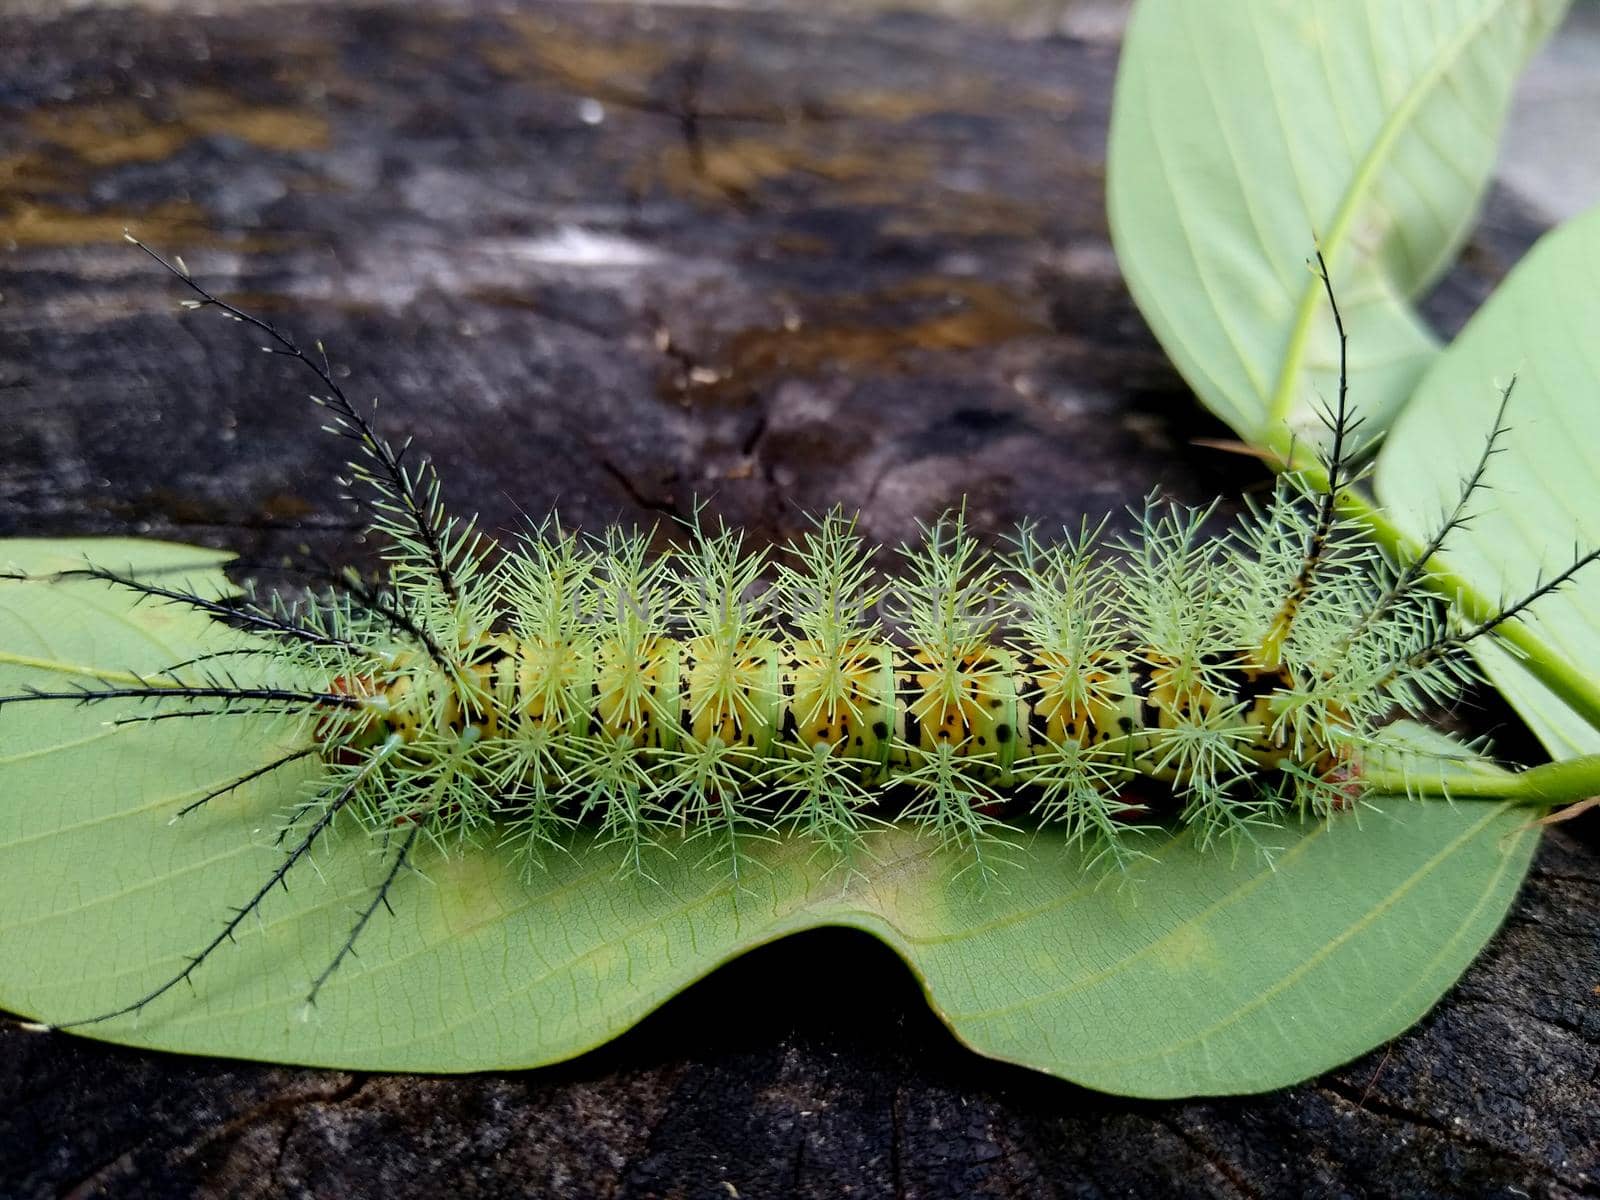 salvador, bahia / brazil - november 24, 2020: insect fire caterpillar is seen in a garden in the city of Salvador.